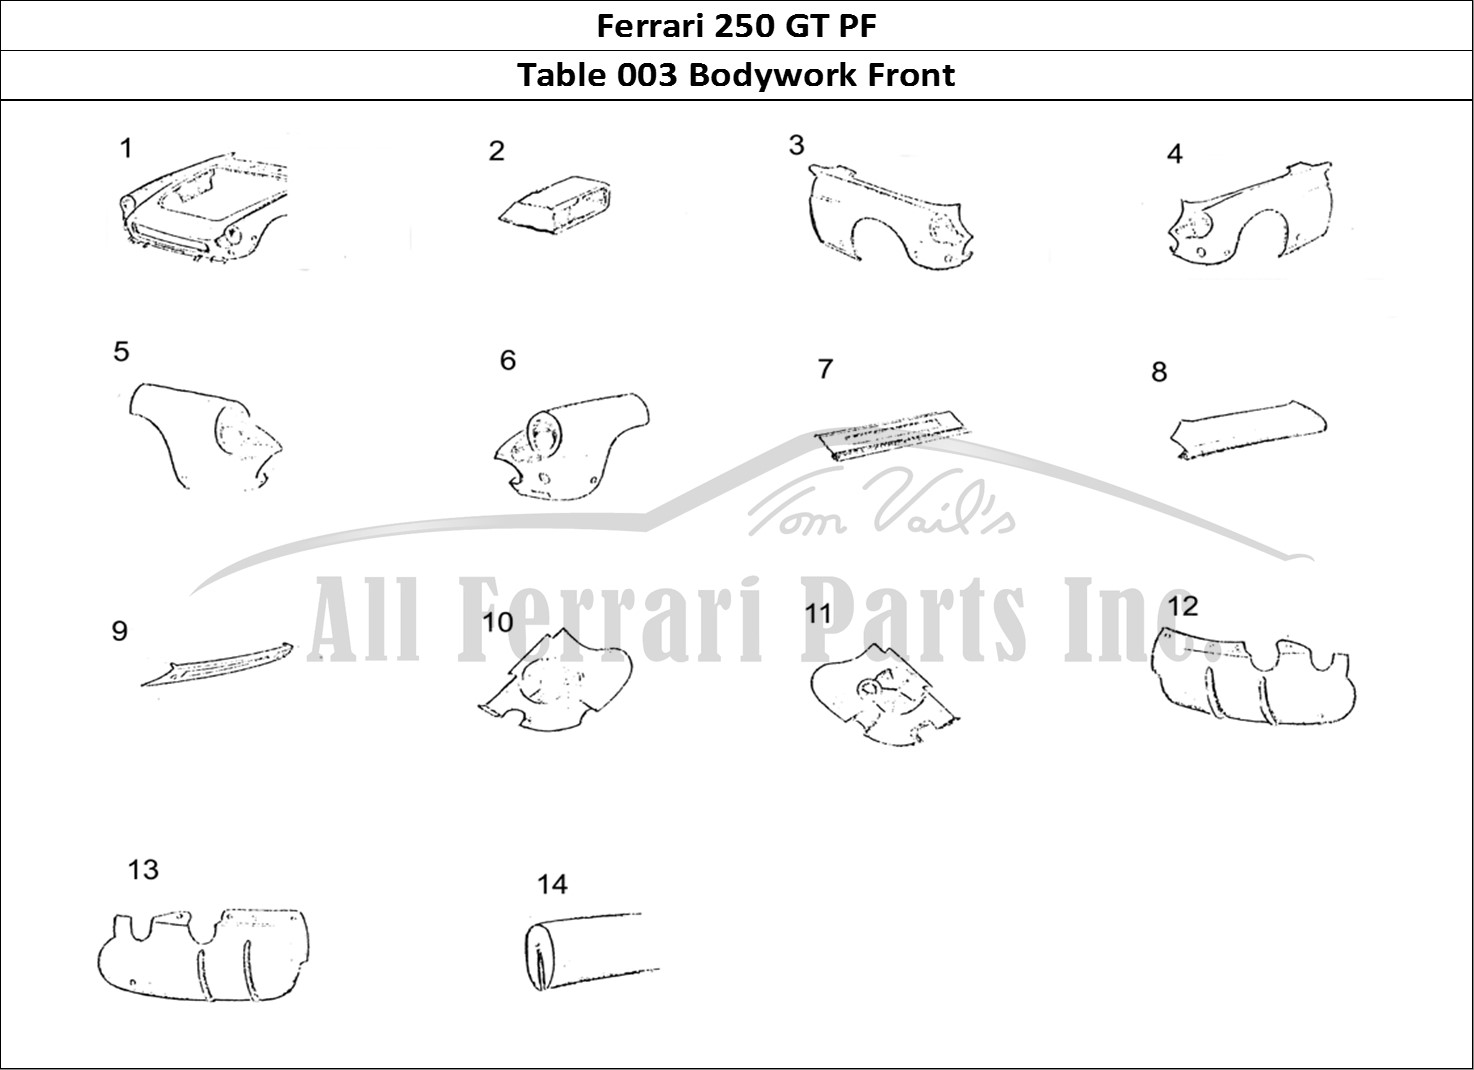 Ferrari Parts Ferrari 250 GT (Coachwork) Page 003 Body Front